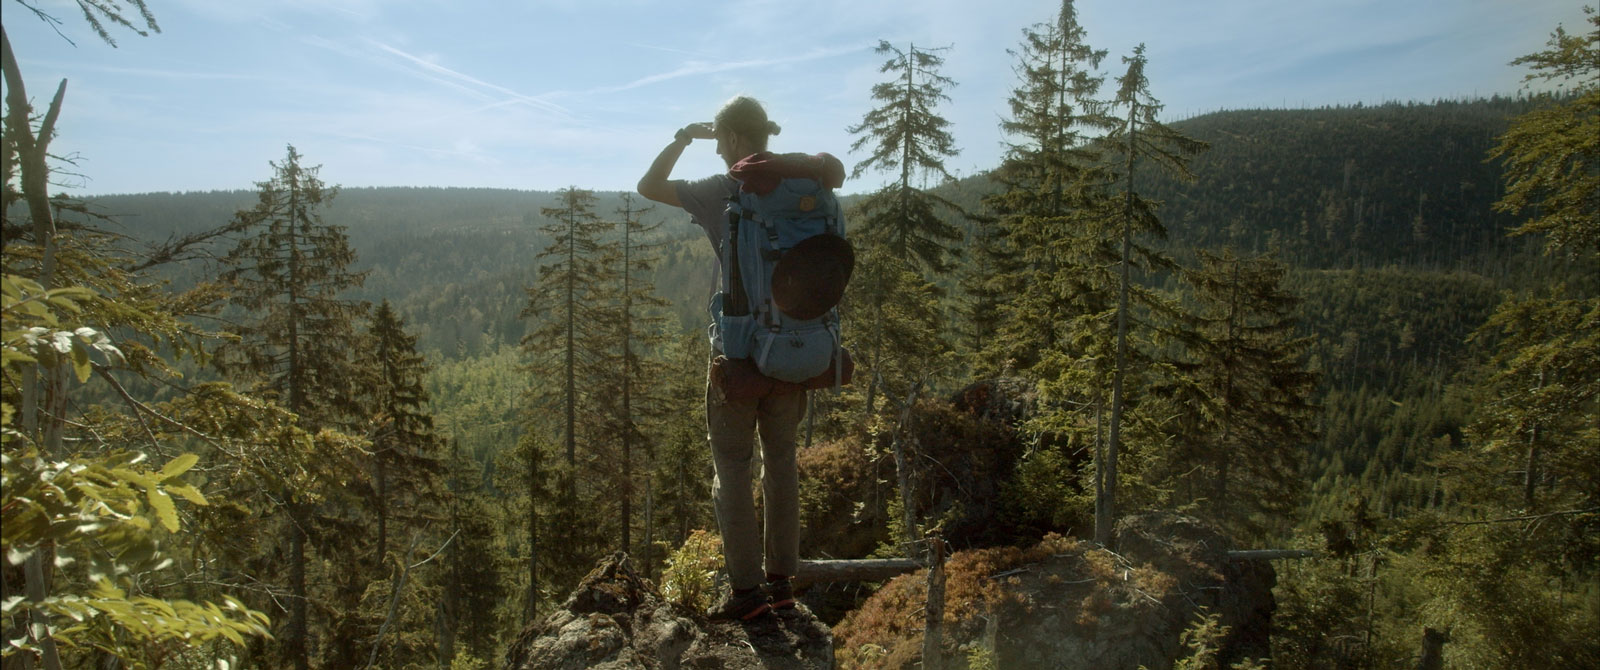 Dokumentarfilm 'Der Wilde Wald' - Filmstill: Wanderer mit Ausblick